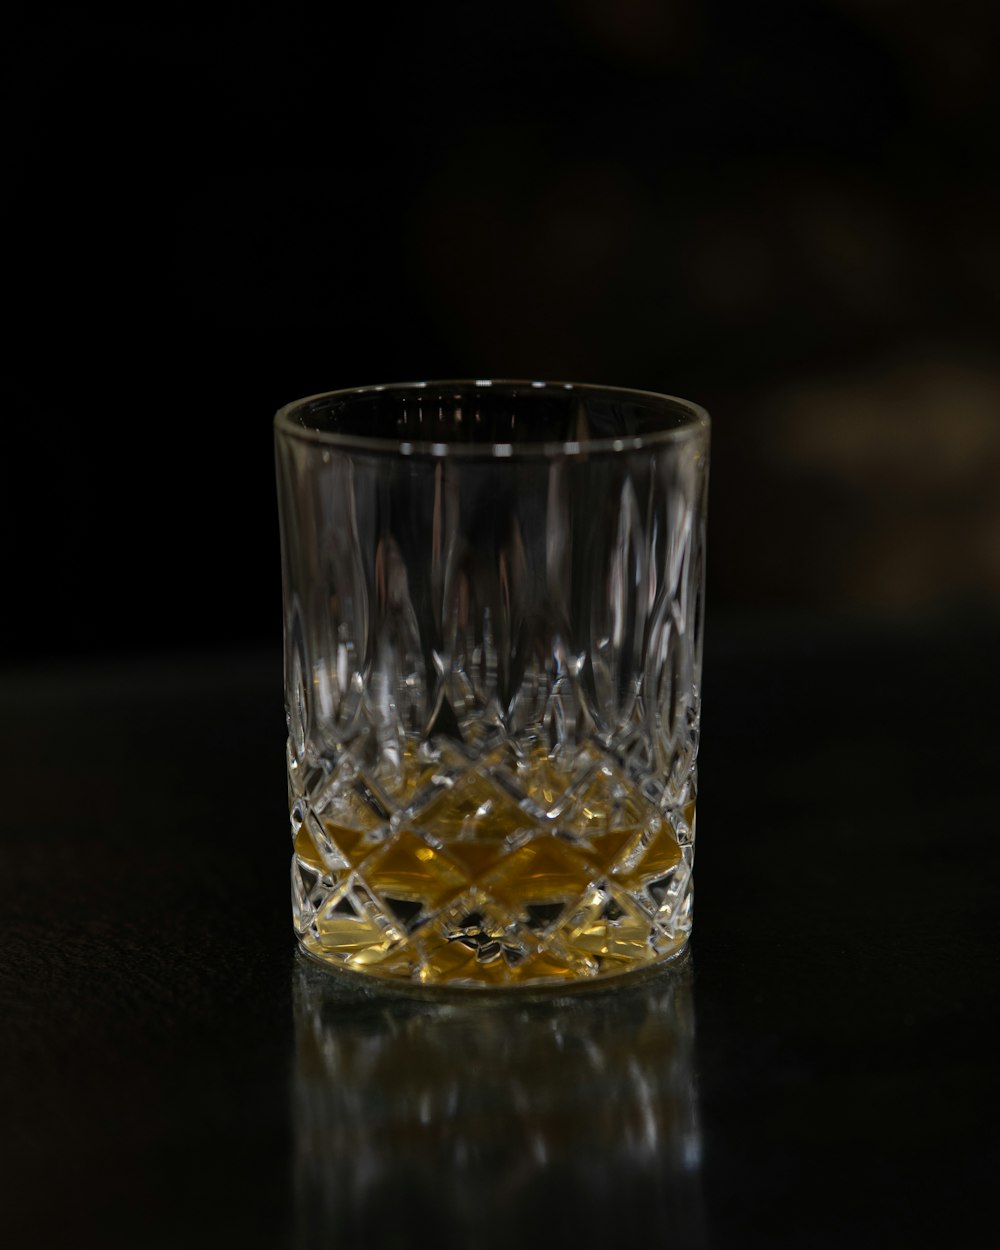 Un vaso de whisky sentado en una mesa